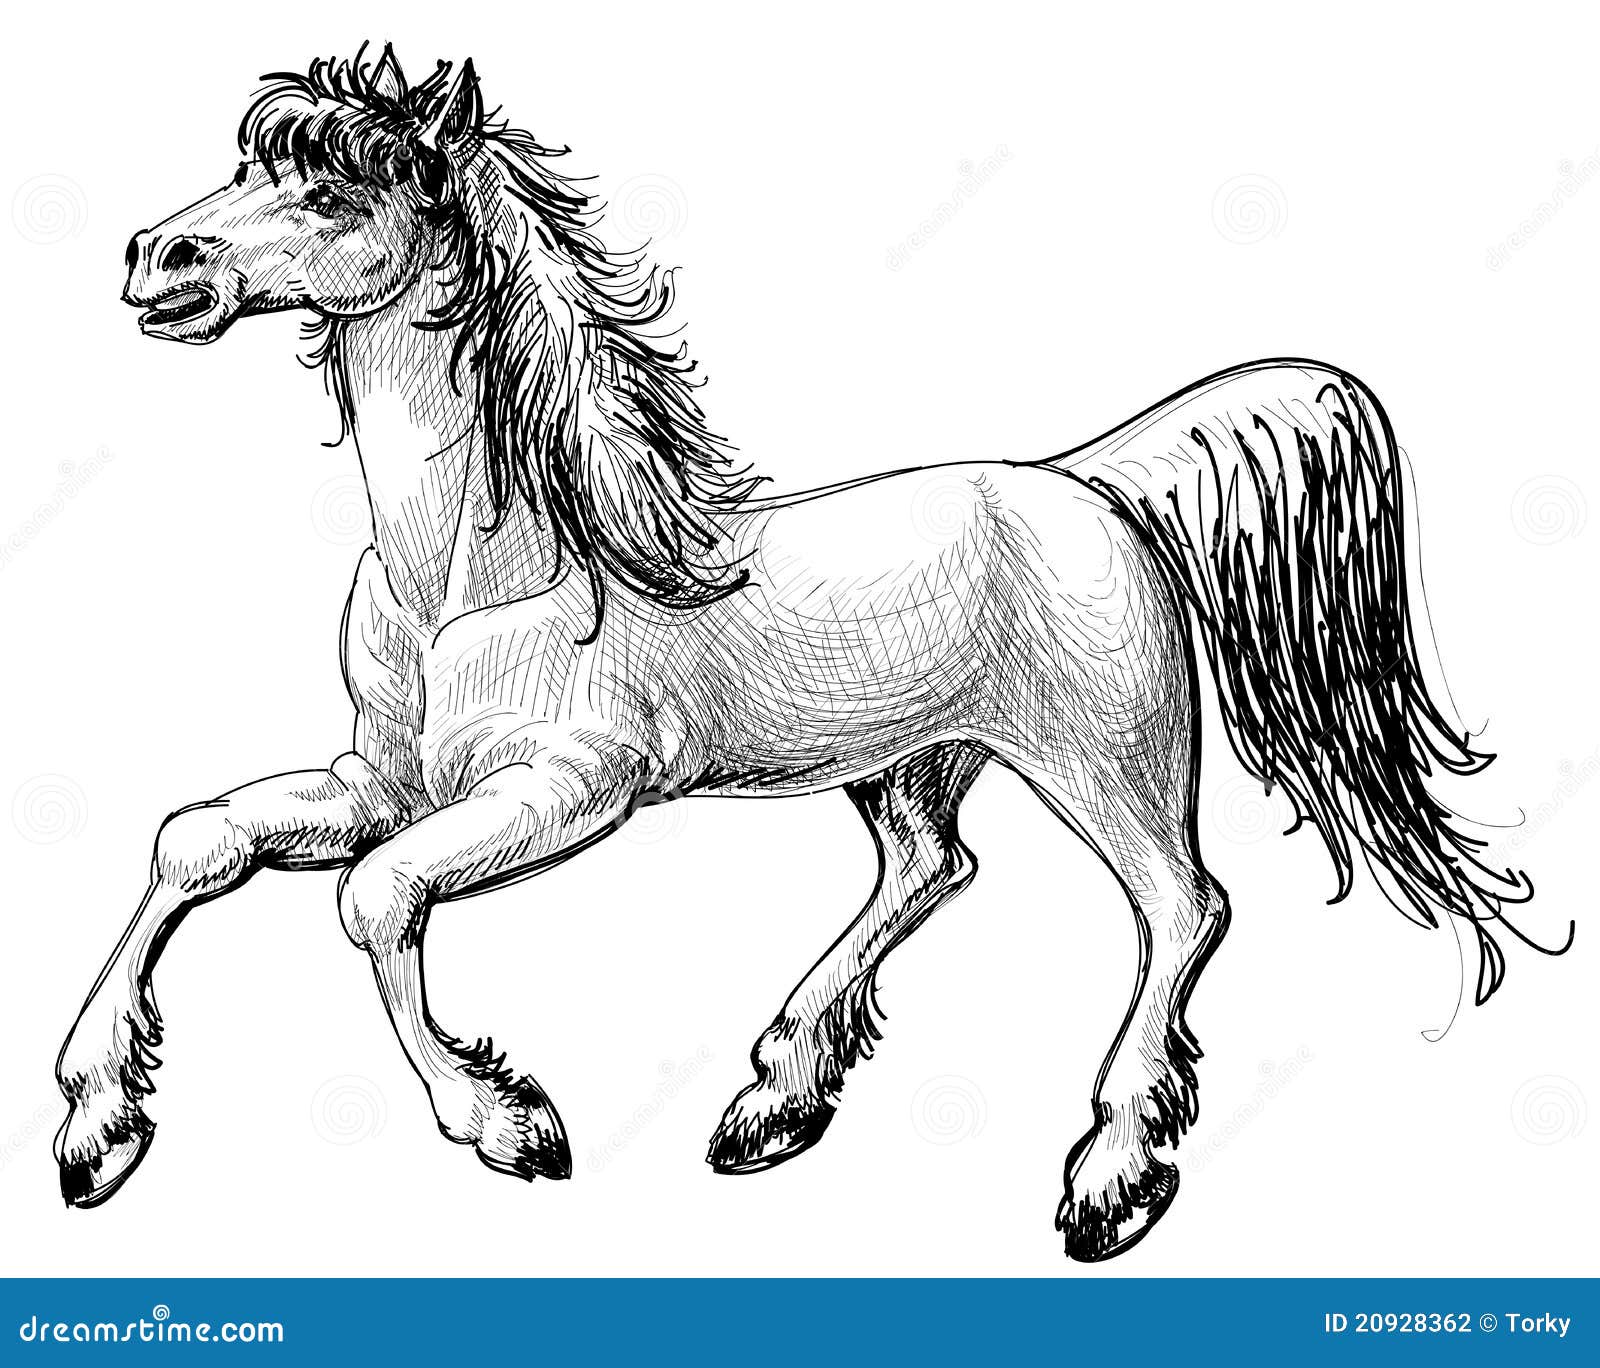 Mais de 100 desenhos de cavalos para colorir!  Cavalo desenho, Cavalos,  Ilustração de cavalo